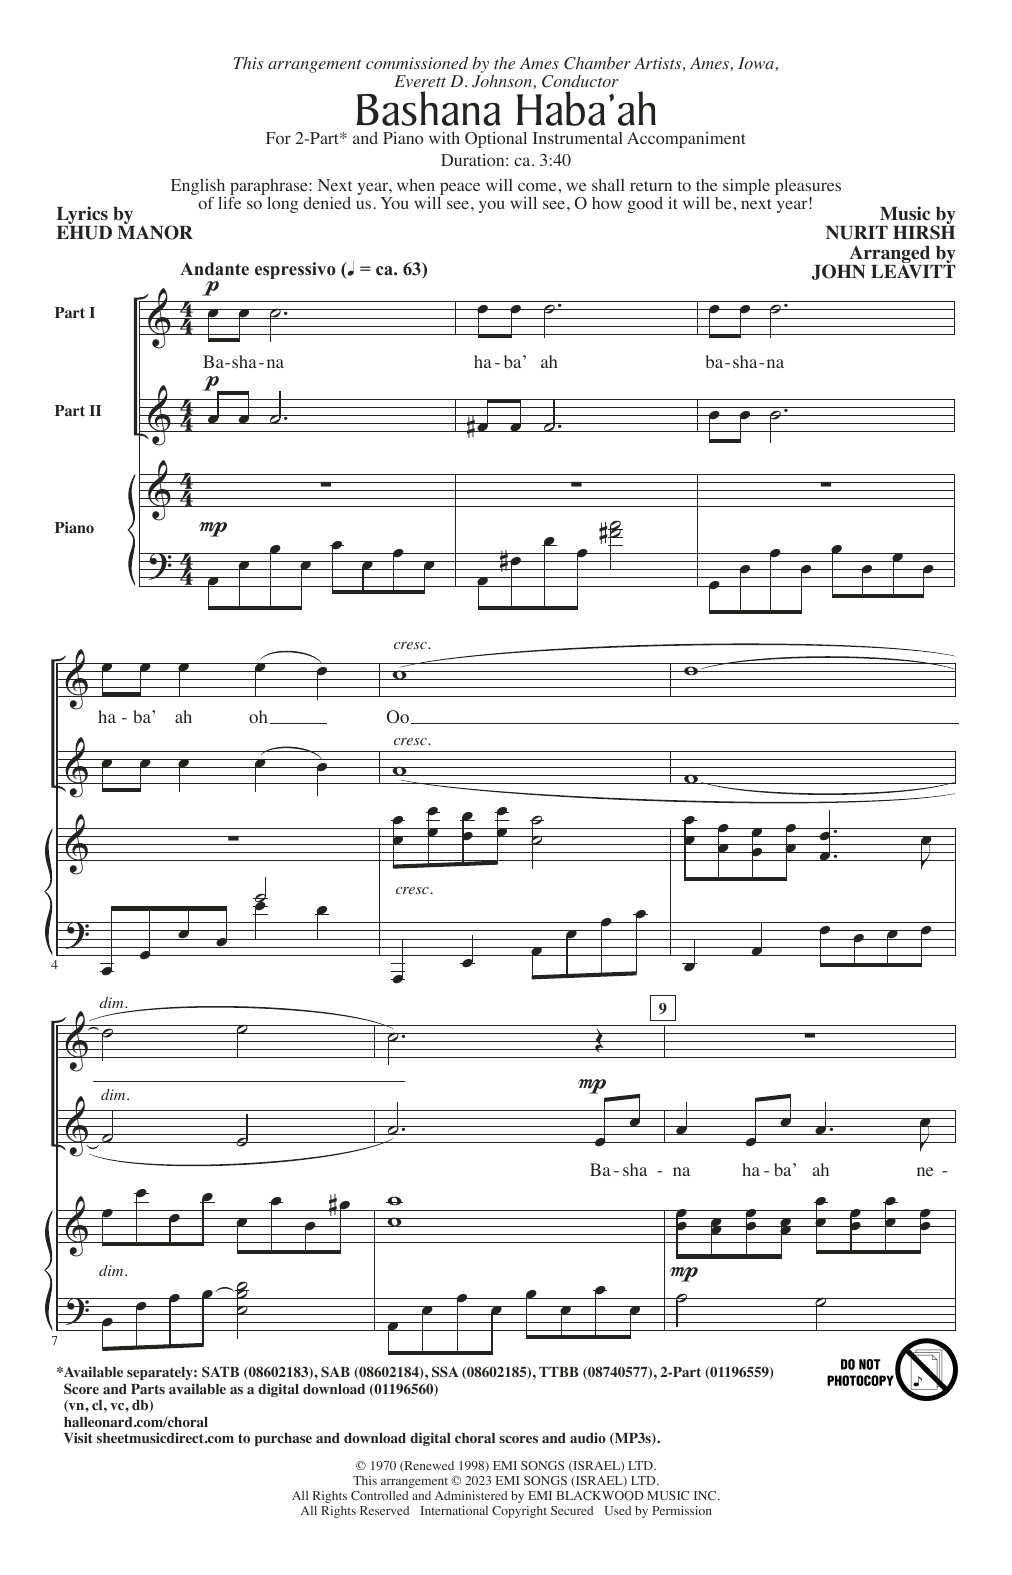 Nurit Hirsh Bashana Haba'ah (arr. John Leavitt) Sheet Music Notes & Chords for SATB Choir - Download or Print PDF